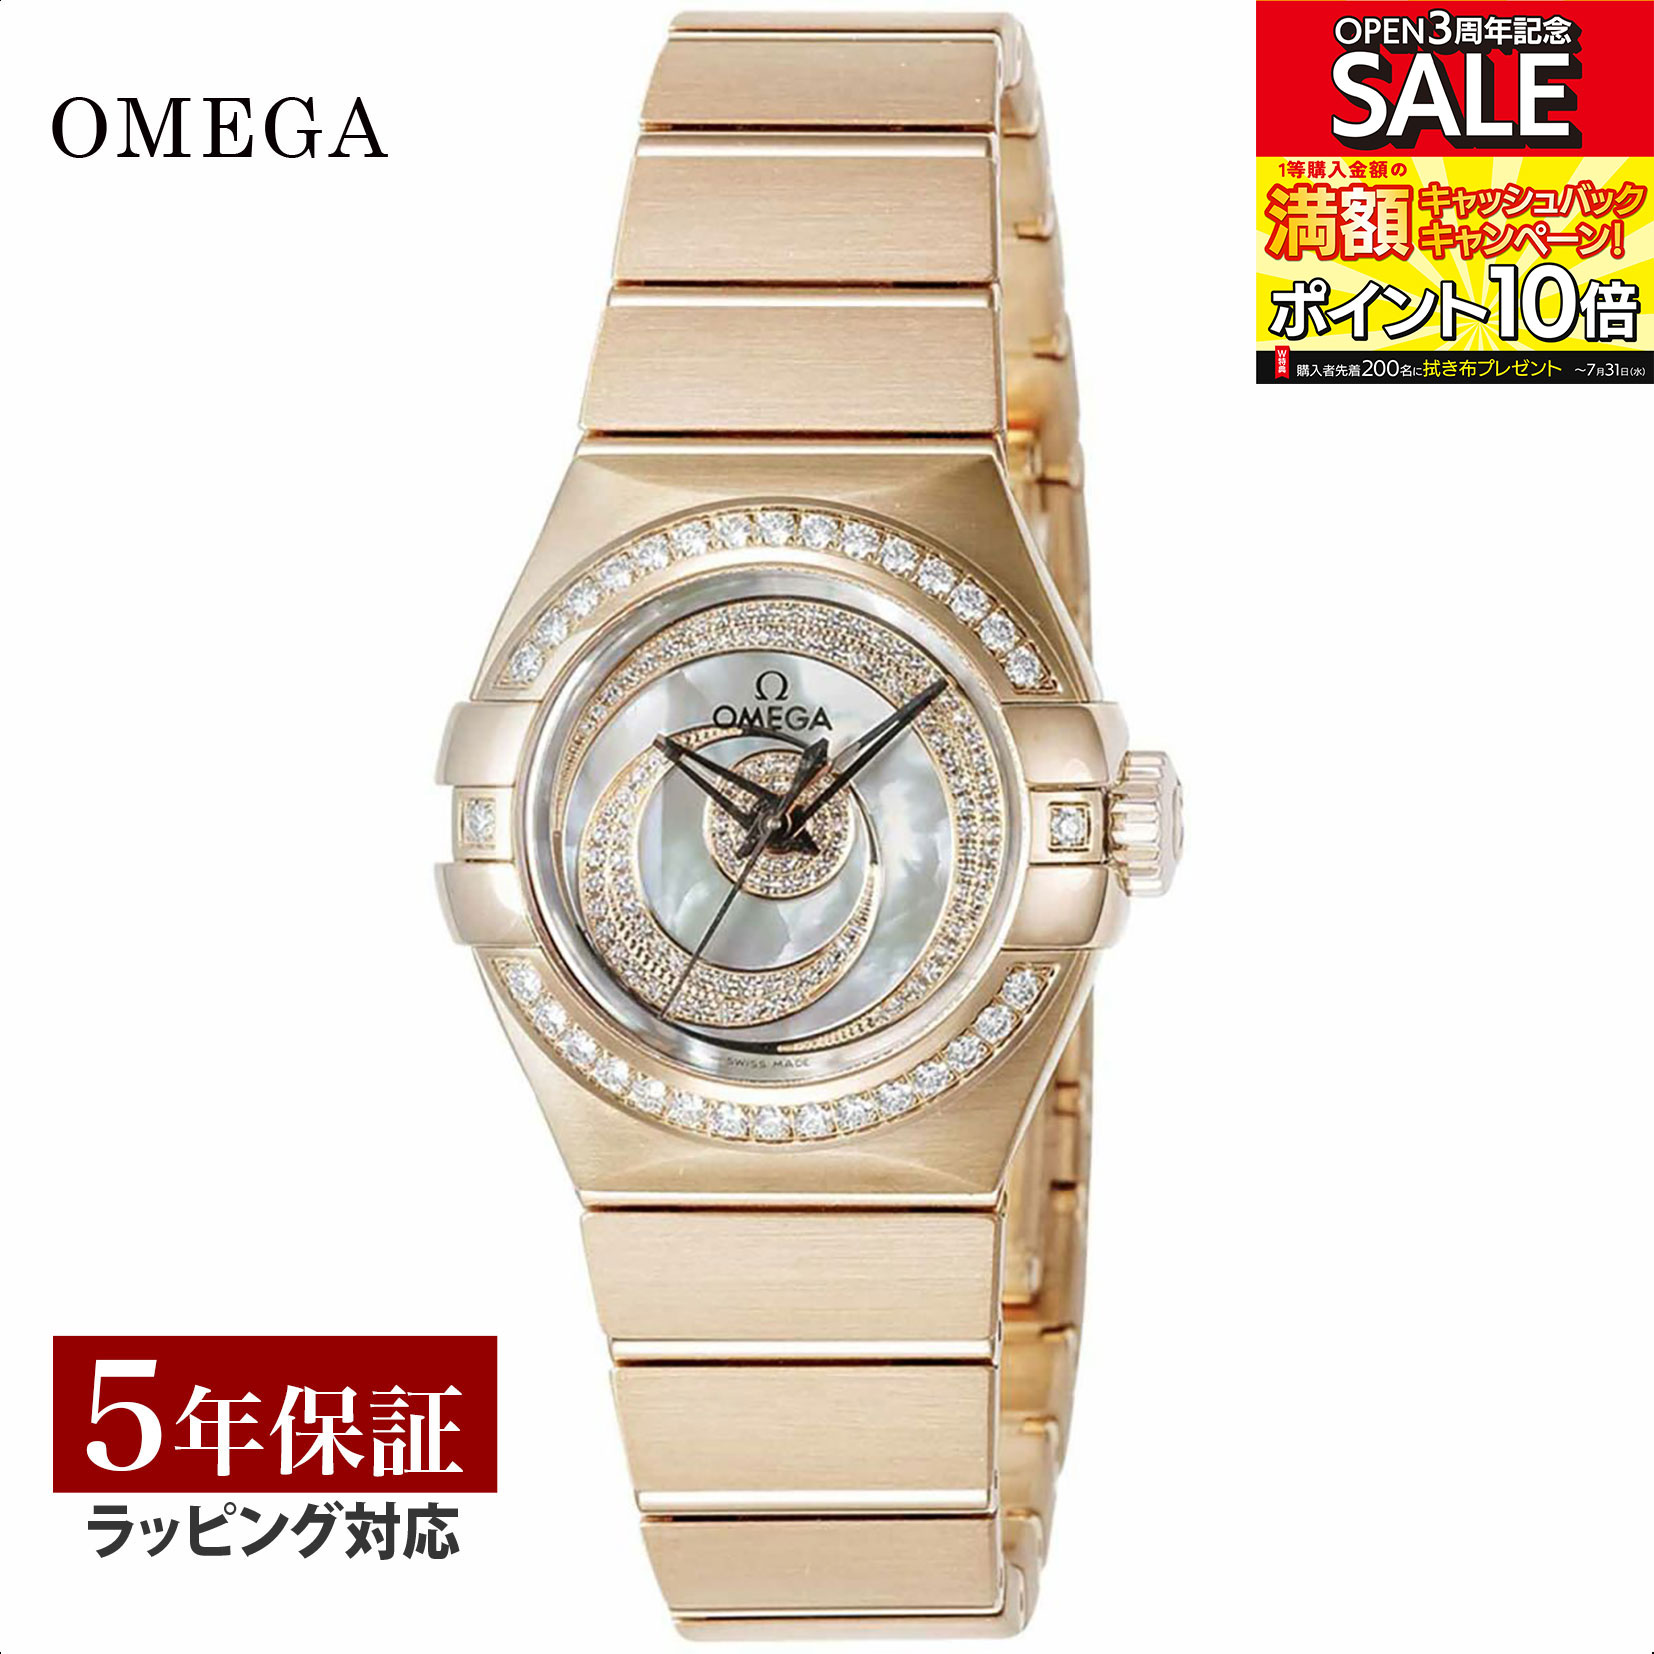 【当店限定】 OMEGA オメガ Constellation コンステレーション レディース 自動巻 ホワイトパール/K18RG/ダイヤモンド 123.55.27.20.55.005 時計 腕時計 高級腕時計 ブランド